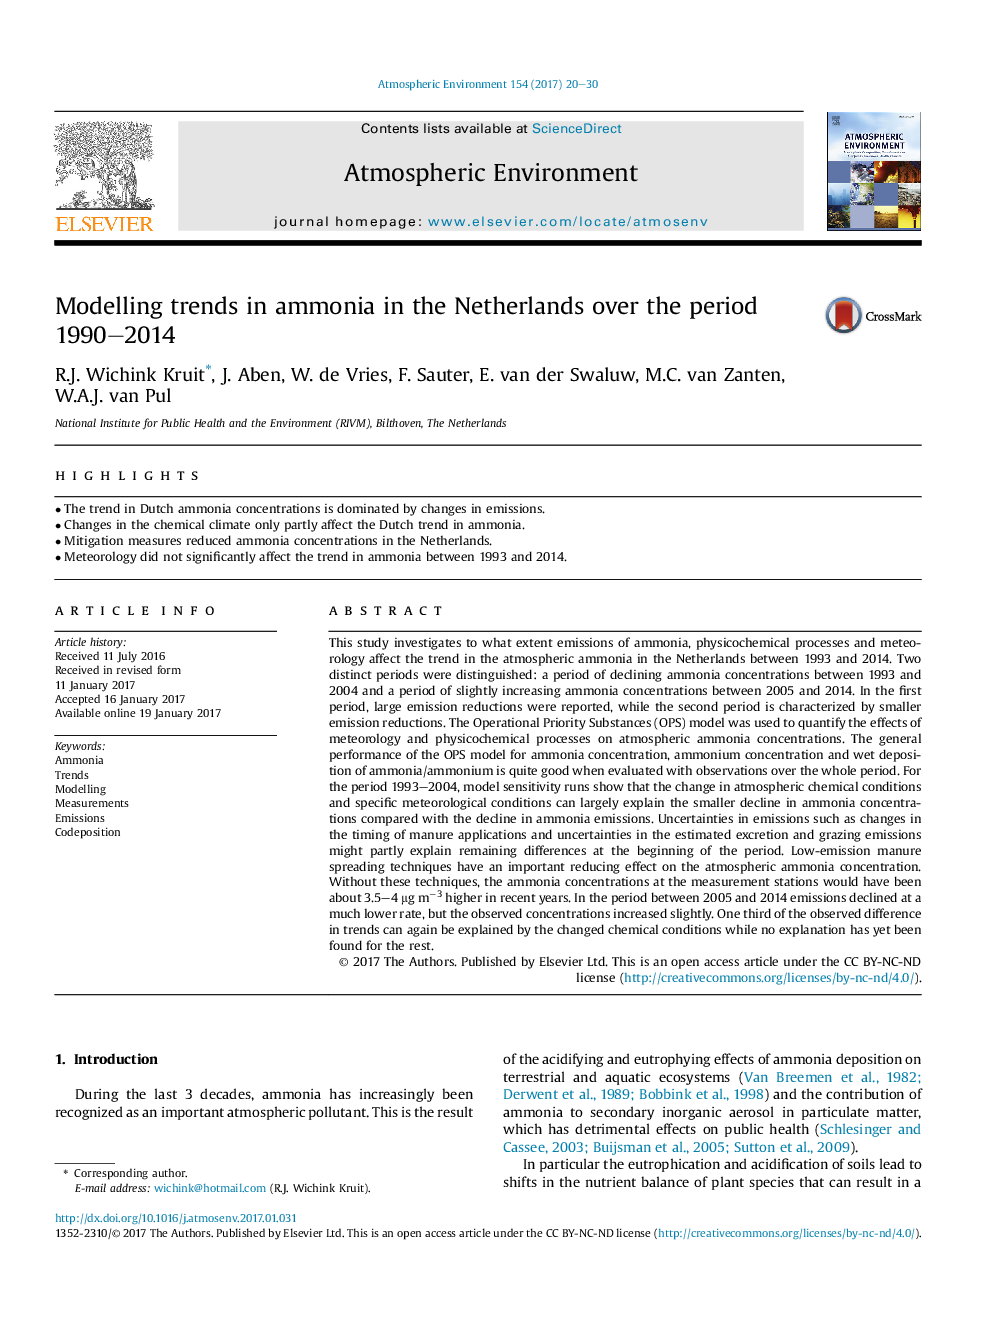 روند آمونیاک در هلند در طول دوره 1990-2014 